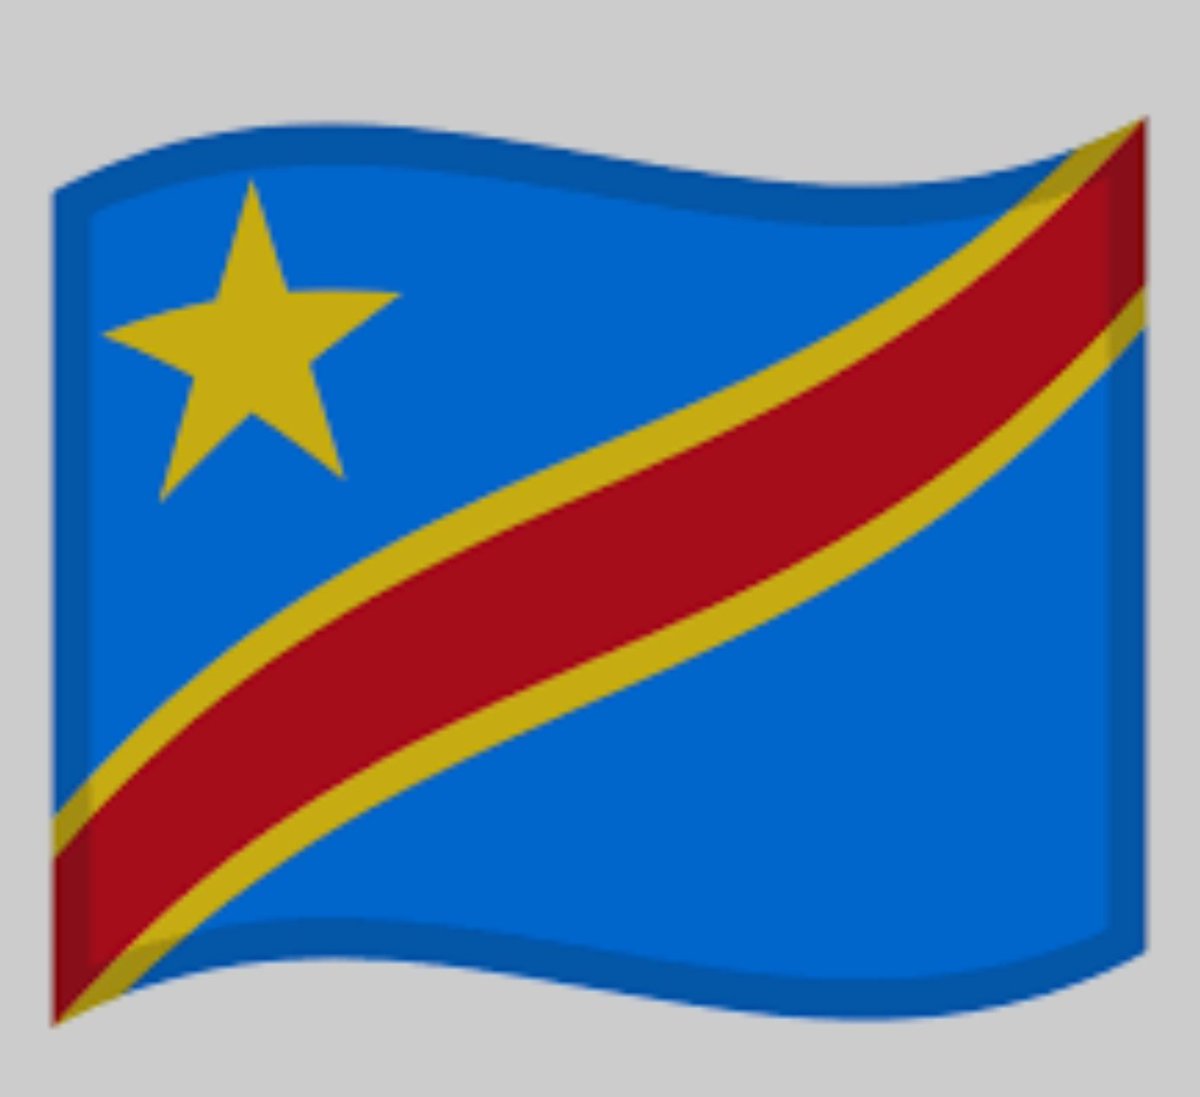 #RDC Congolais, Dis-moi pour qui tu votes, je te dirai qui tu es! Devant l'isoloir, souviens-toi des 5 dernières années et pense aux 5 prochaines. Évalue ta vie, scrute ton environnement, projette ton destin et celui de ton Pays, ta Nation. Tu auras été prévenu, en temps utile!